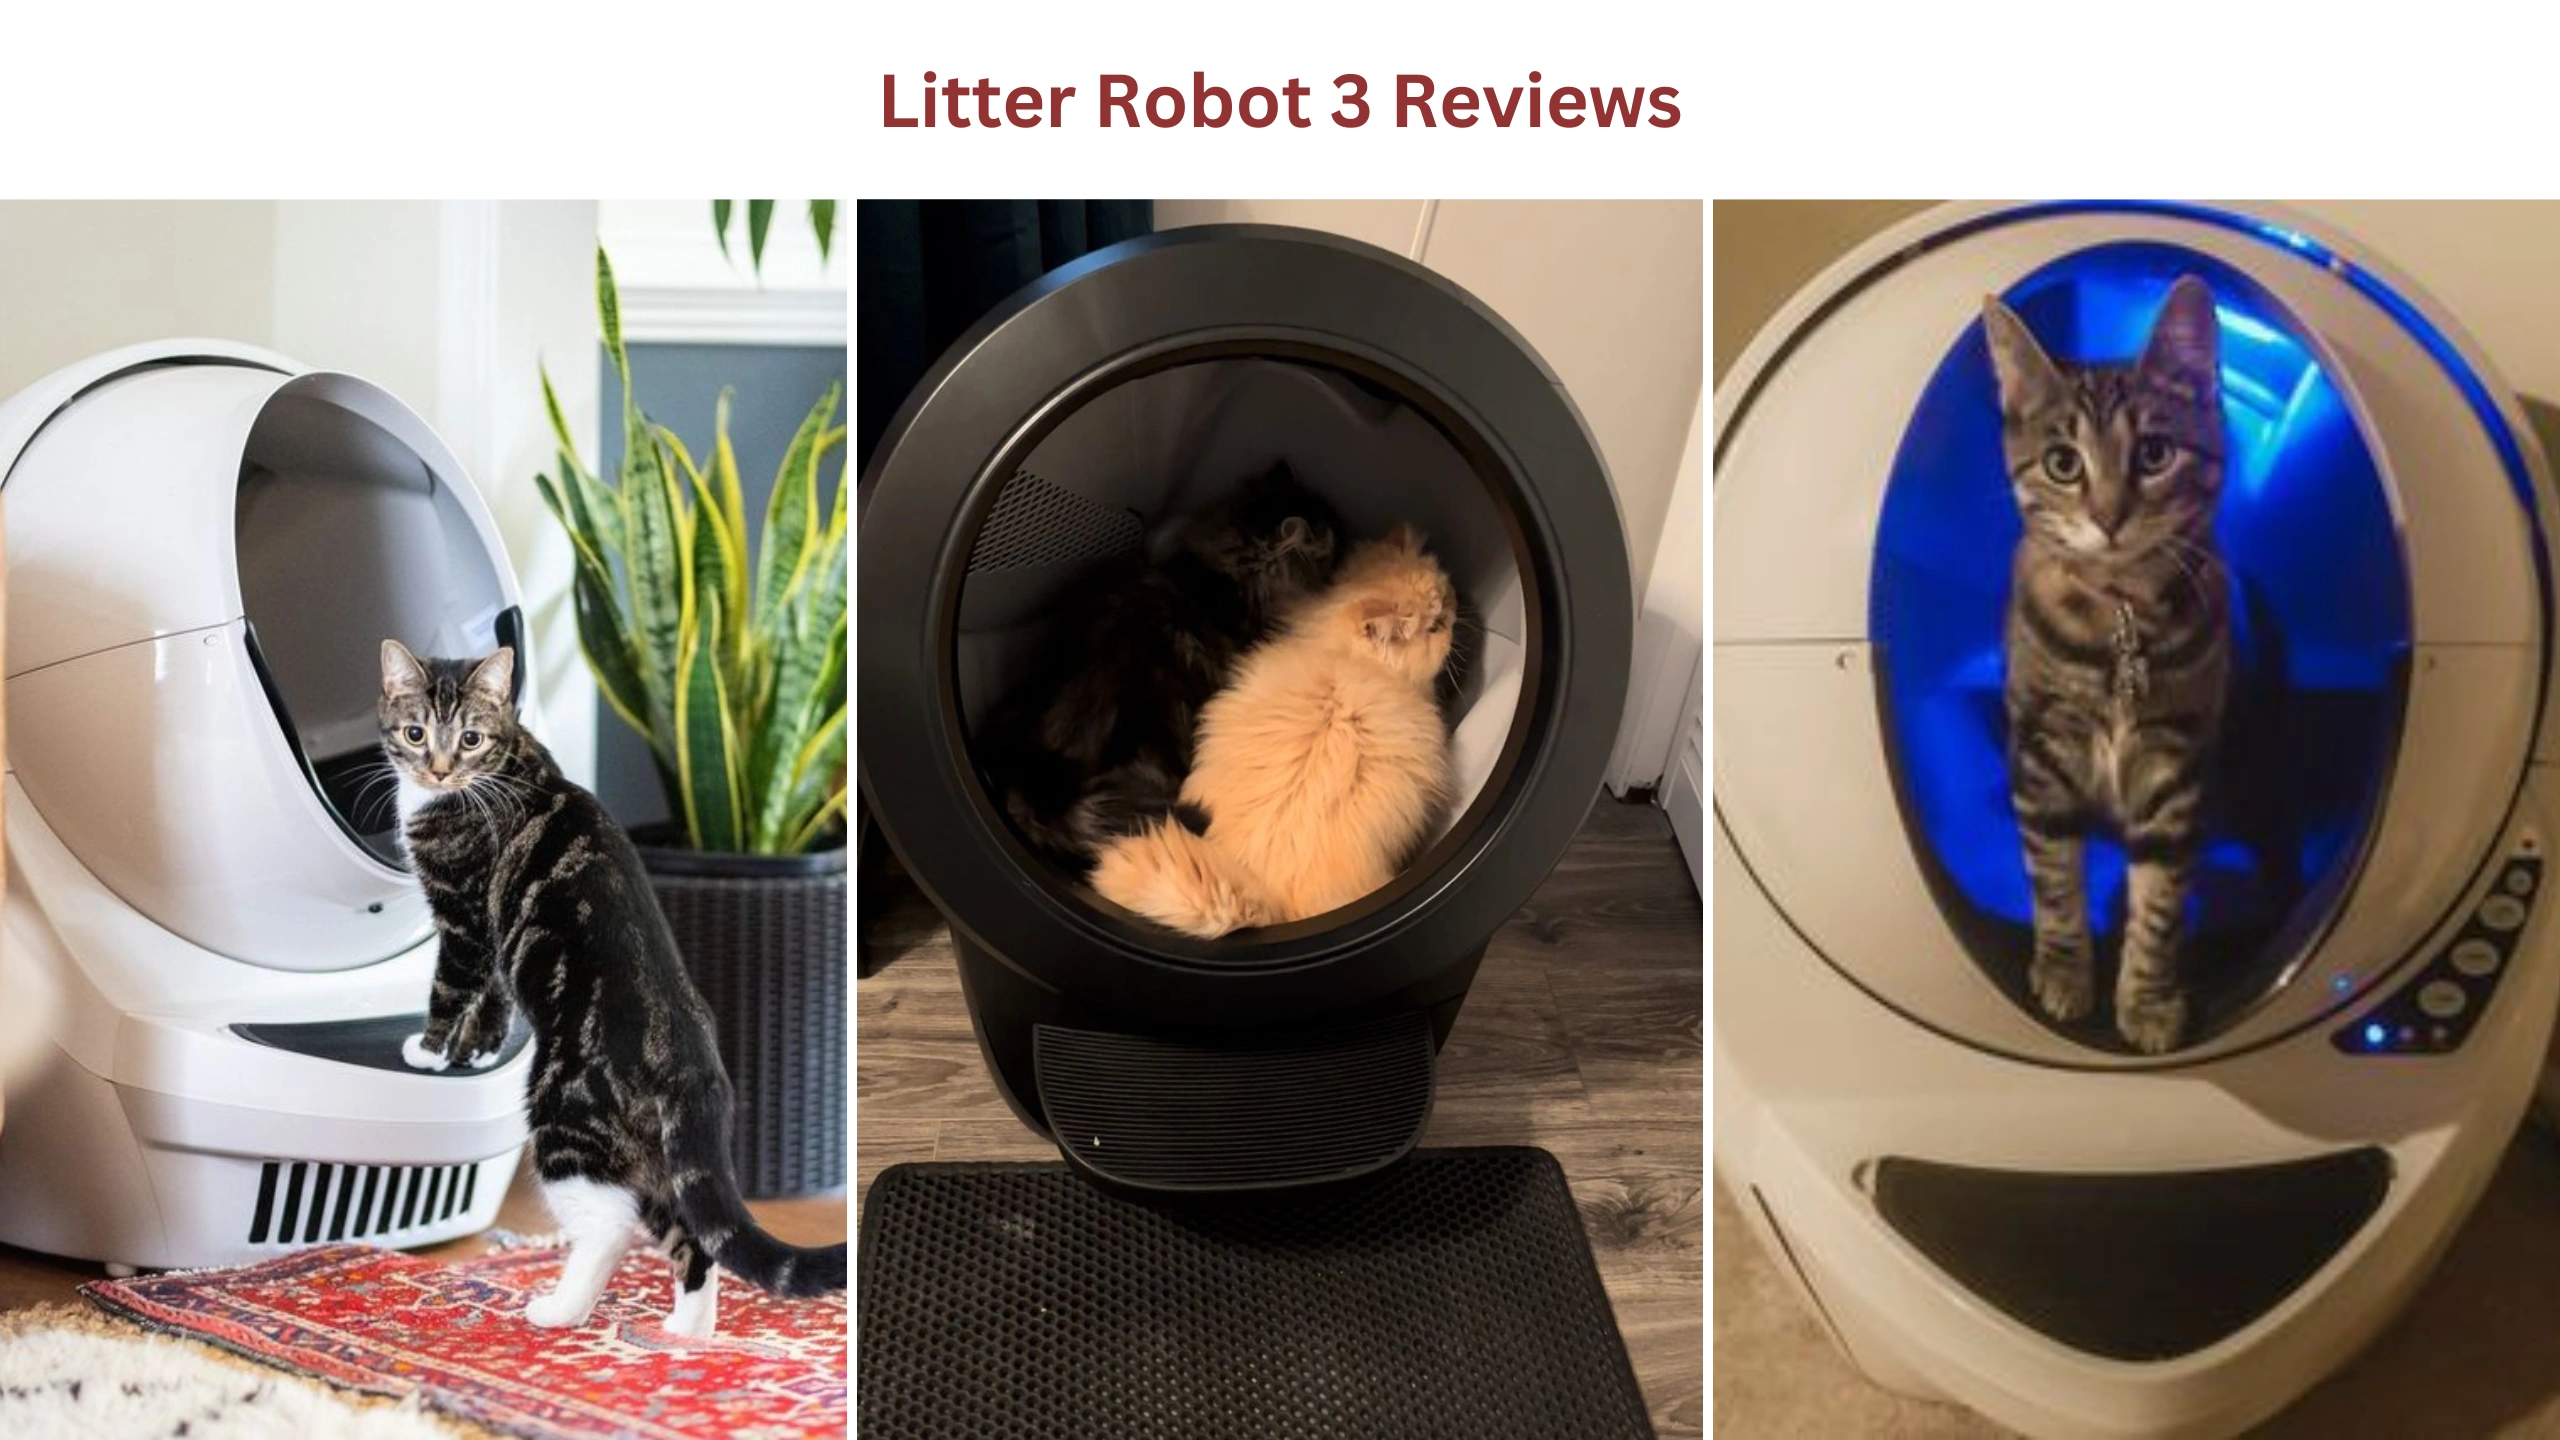 Litter robot 3 reviews